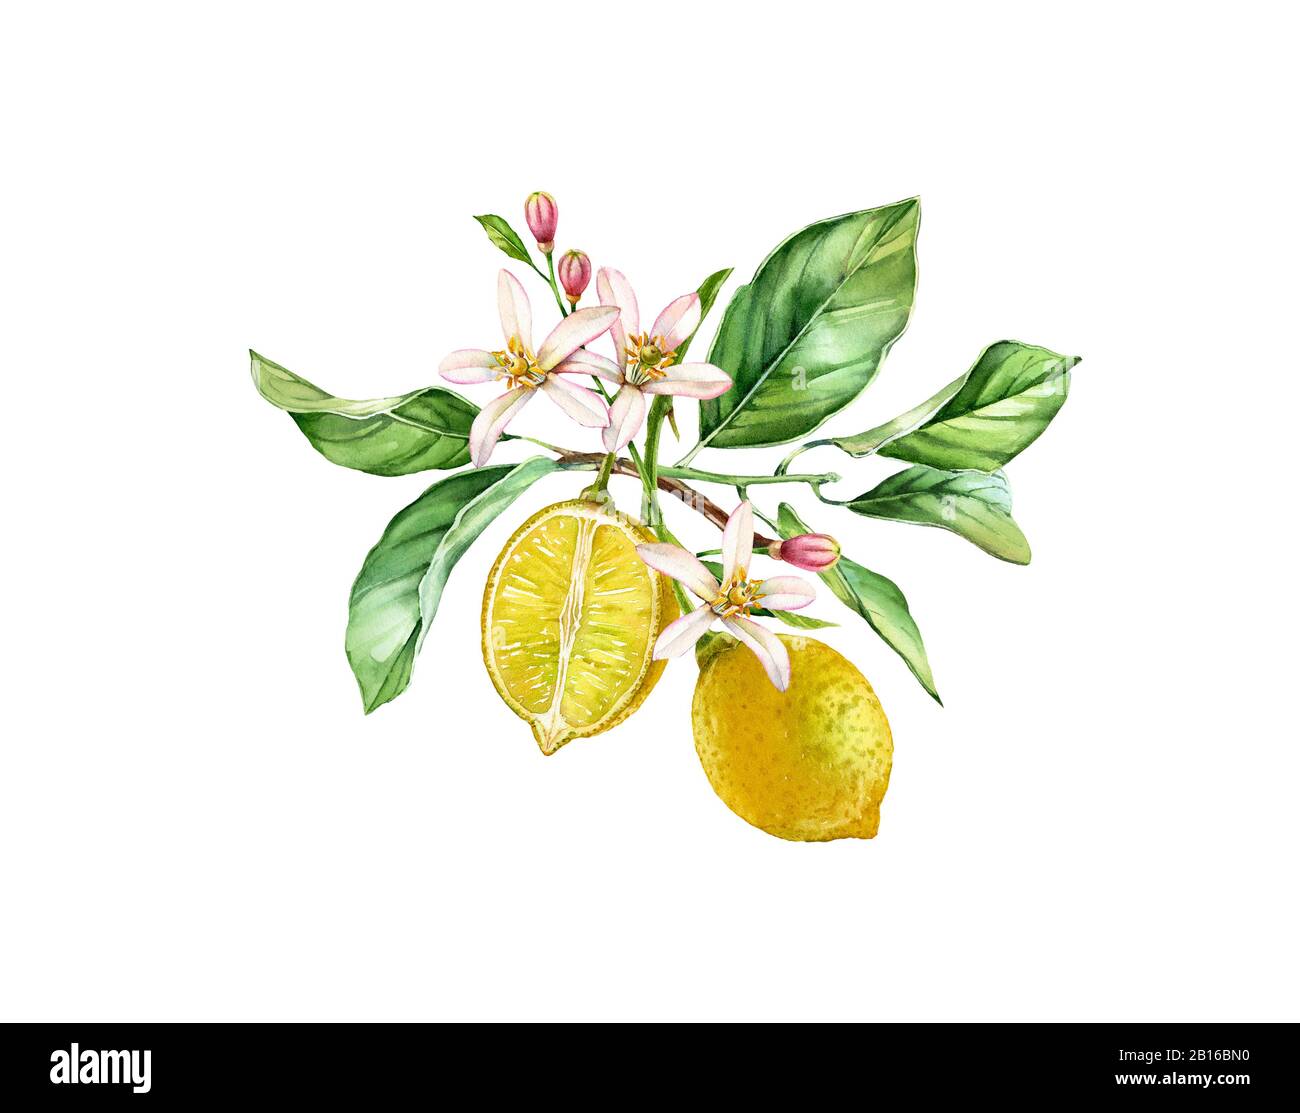 Aquarell Lemonbaum. Realistischer Zweig mit zwei Früchten, Blumen, Blättern. Botanische Illustration. Isoliertes Bildmaterial auf weiß. Handgezogene frische tropische Stockfoto